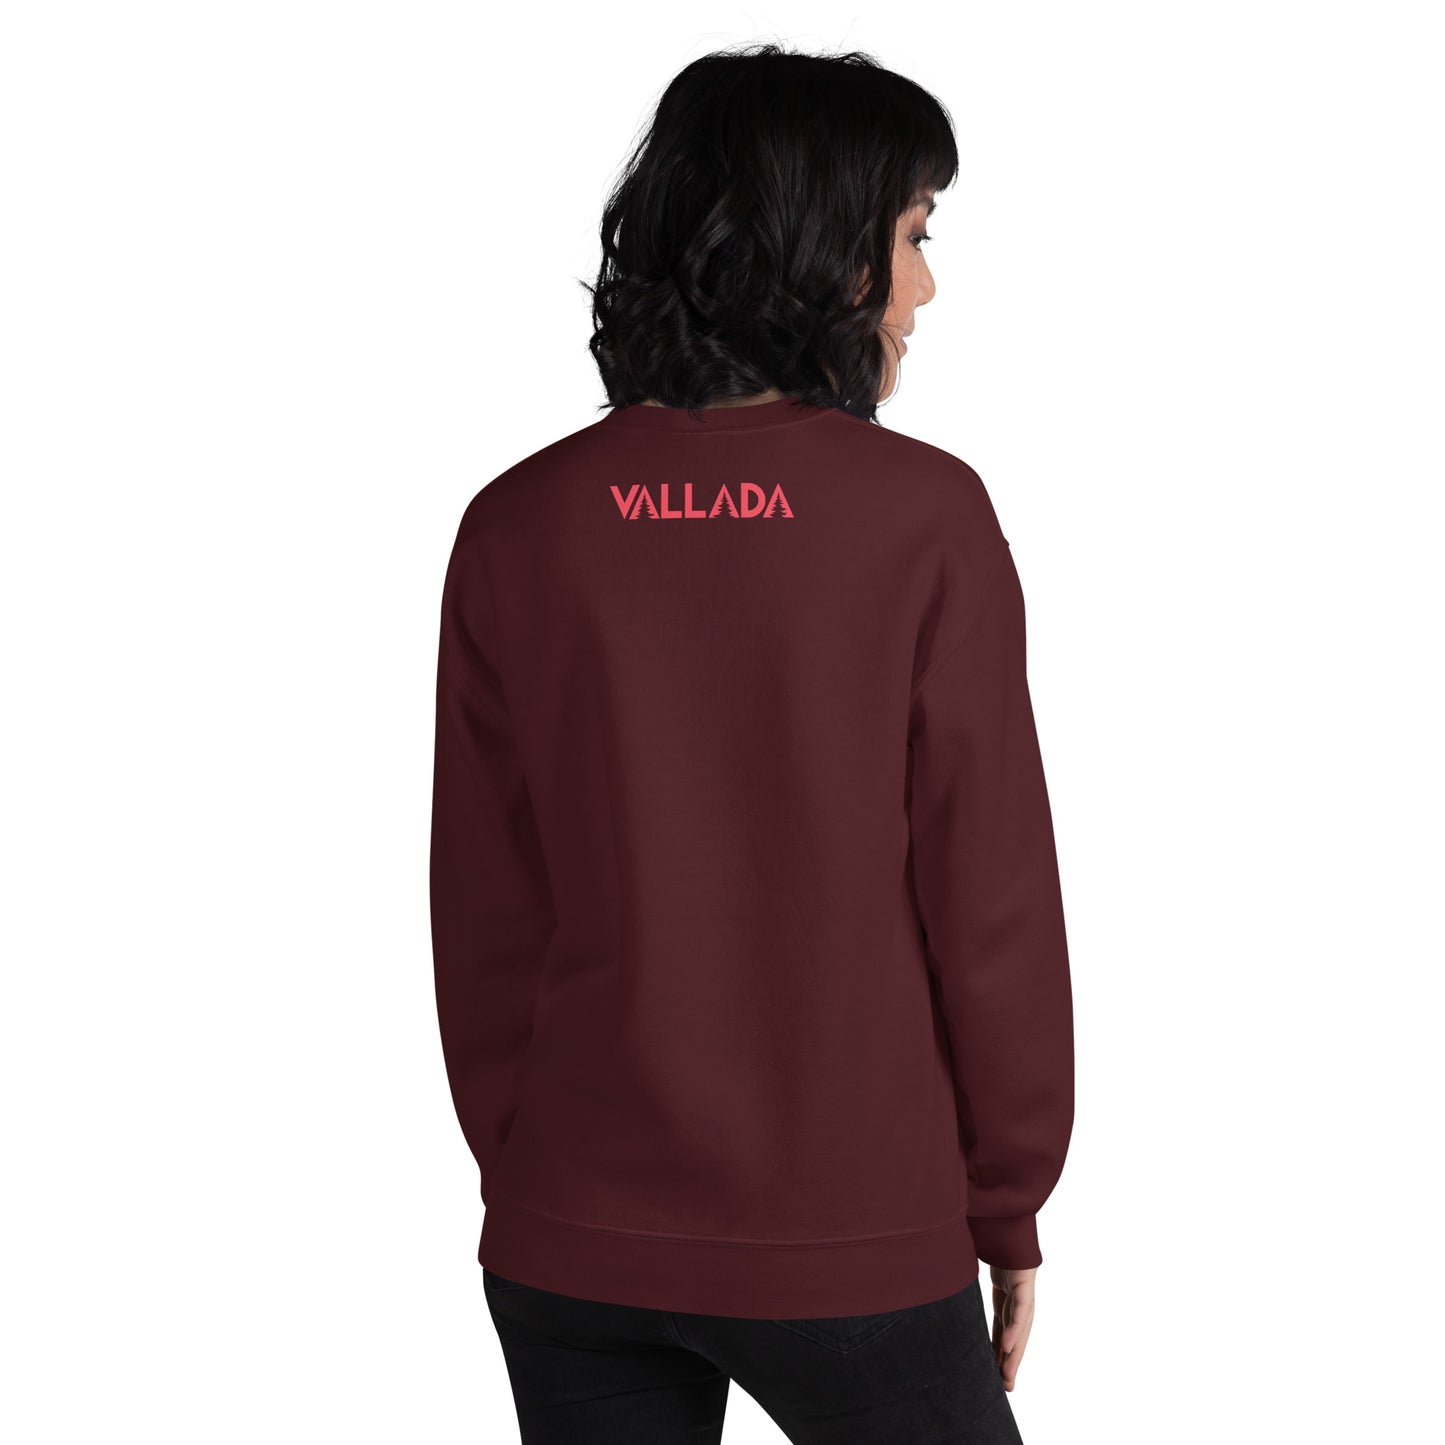 Diese Wanderfreundin trägt ein kastanienbraunes Sweatshirt aus der Säntis-Collection von Vallada. Sie steht mit dem Rücken zur Kamera, so dass wir das Vallada-Logo sehen.